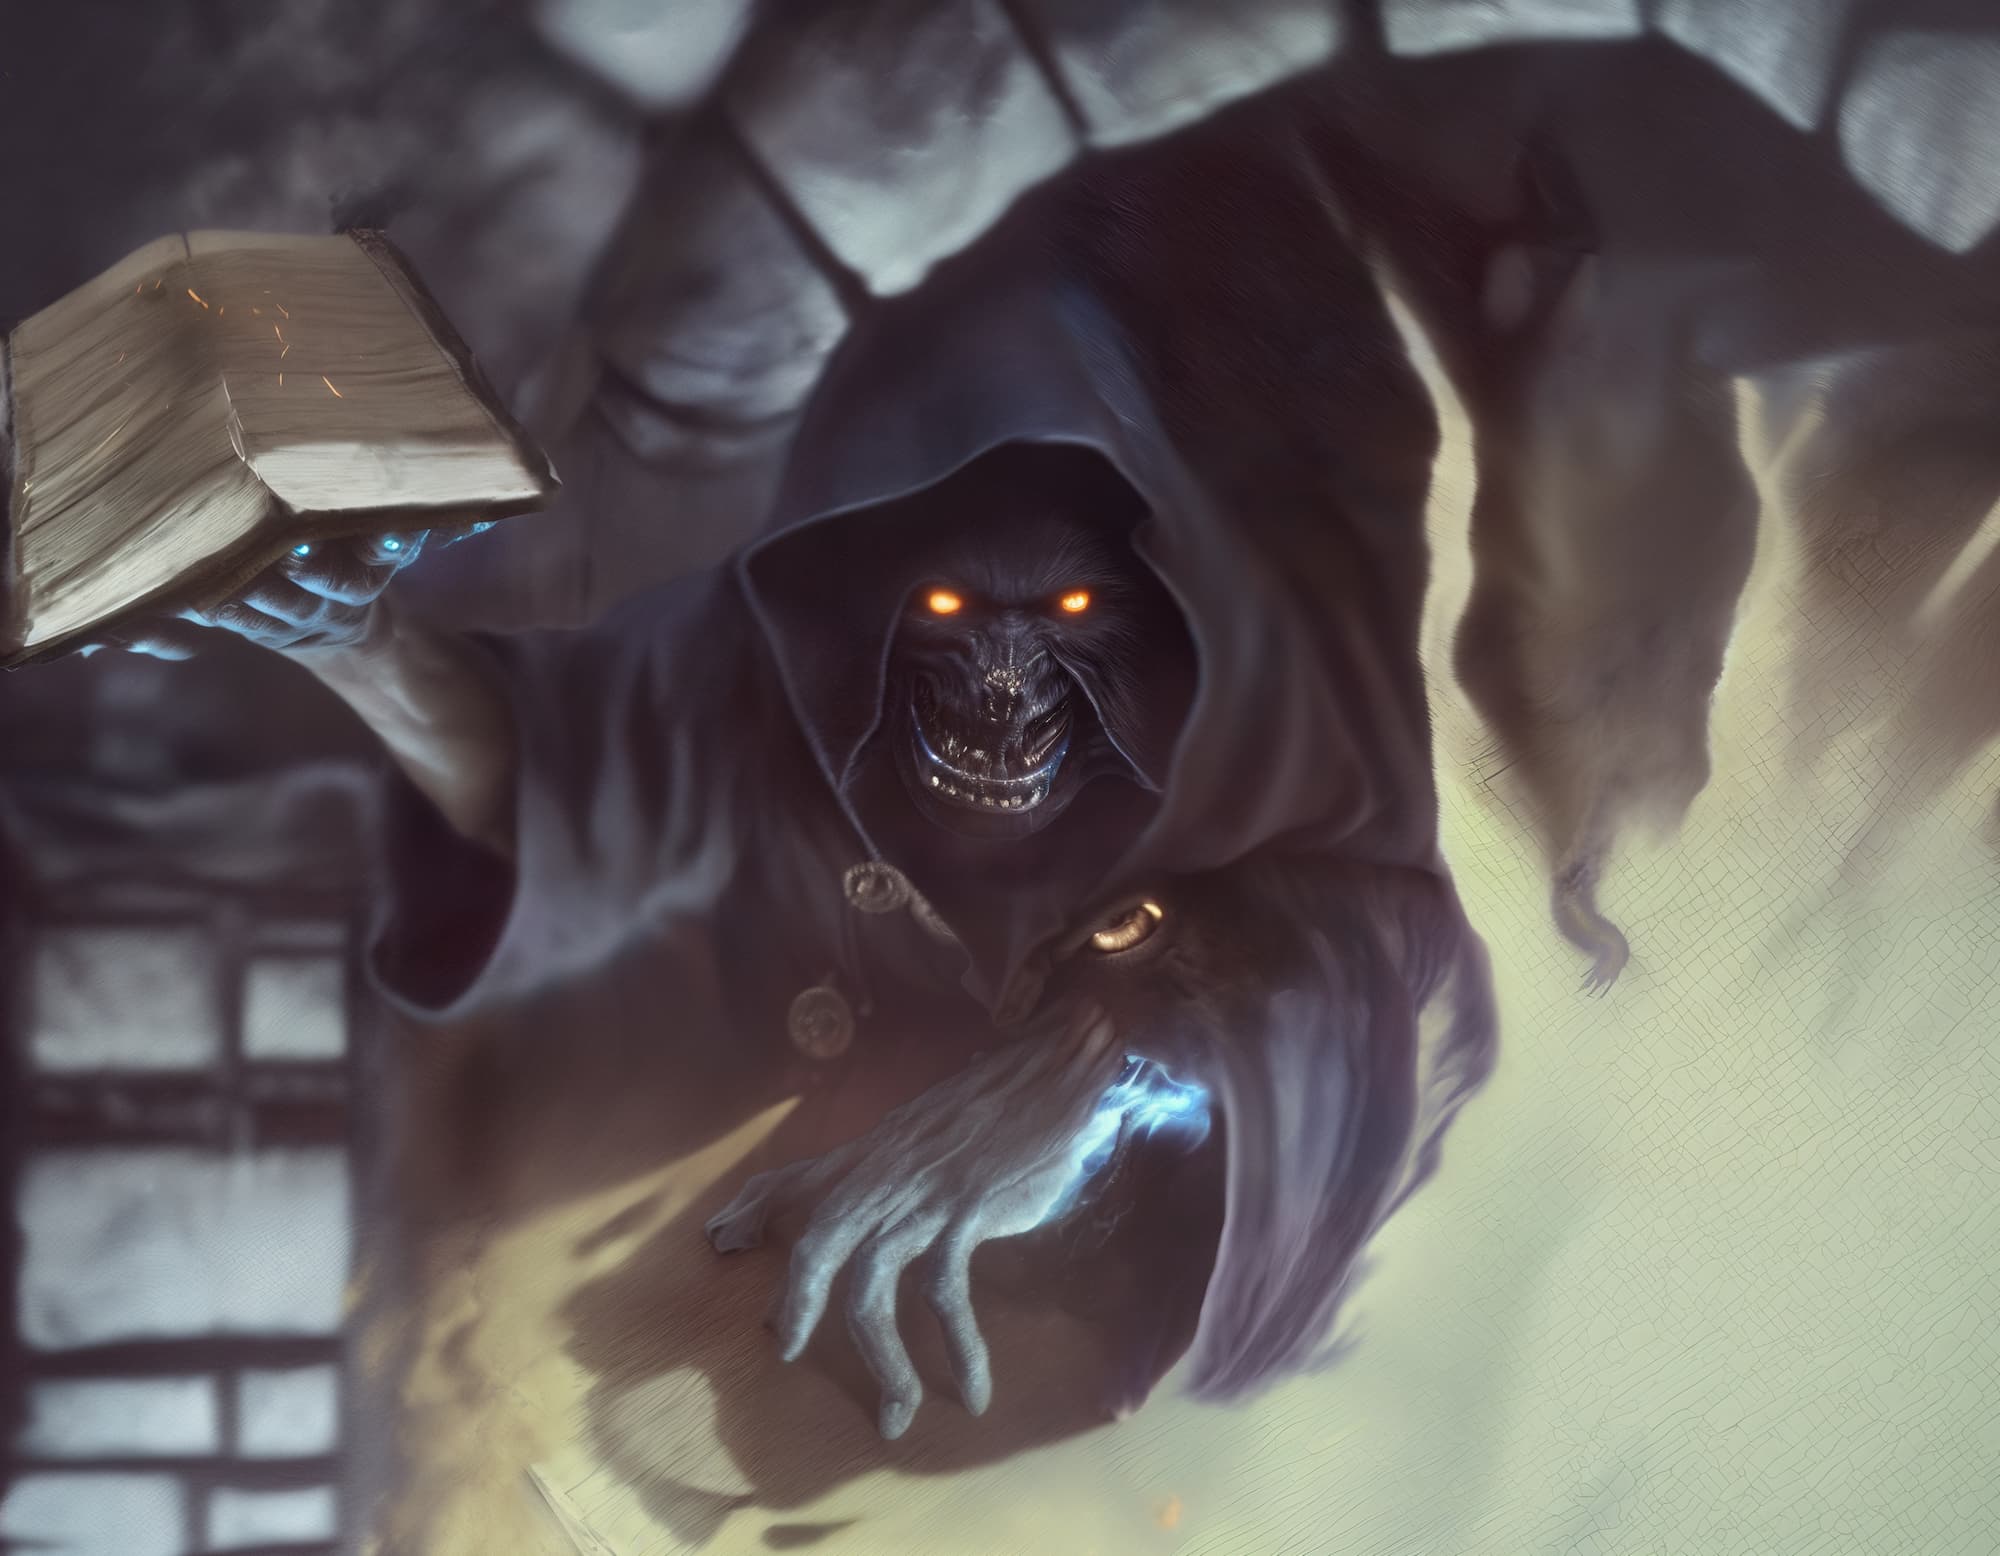 Magic: The Gathering Dark Ritual card created with AI